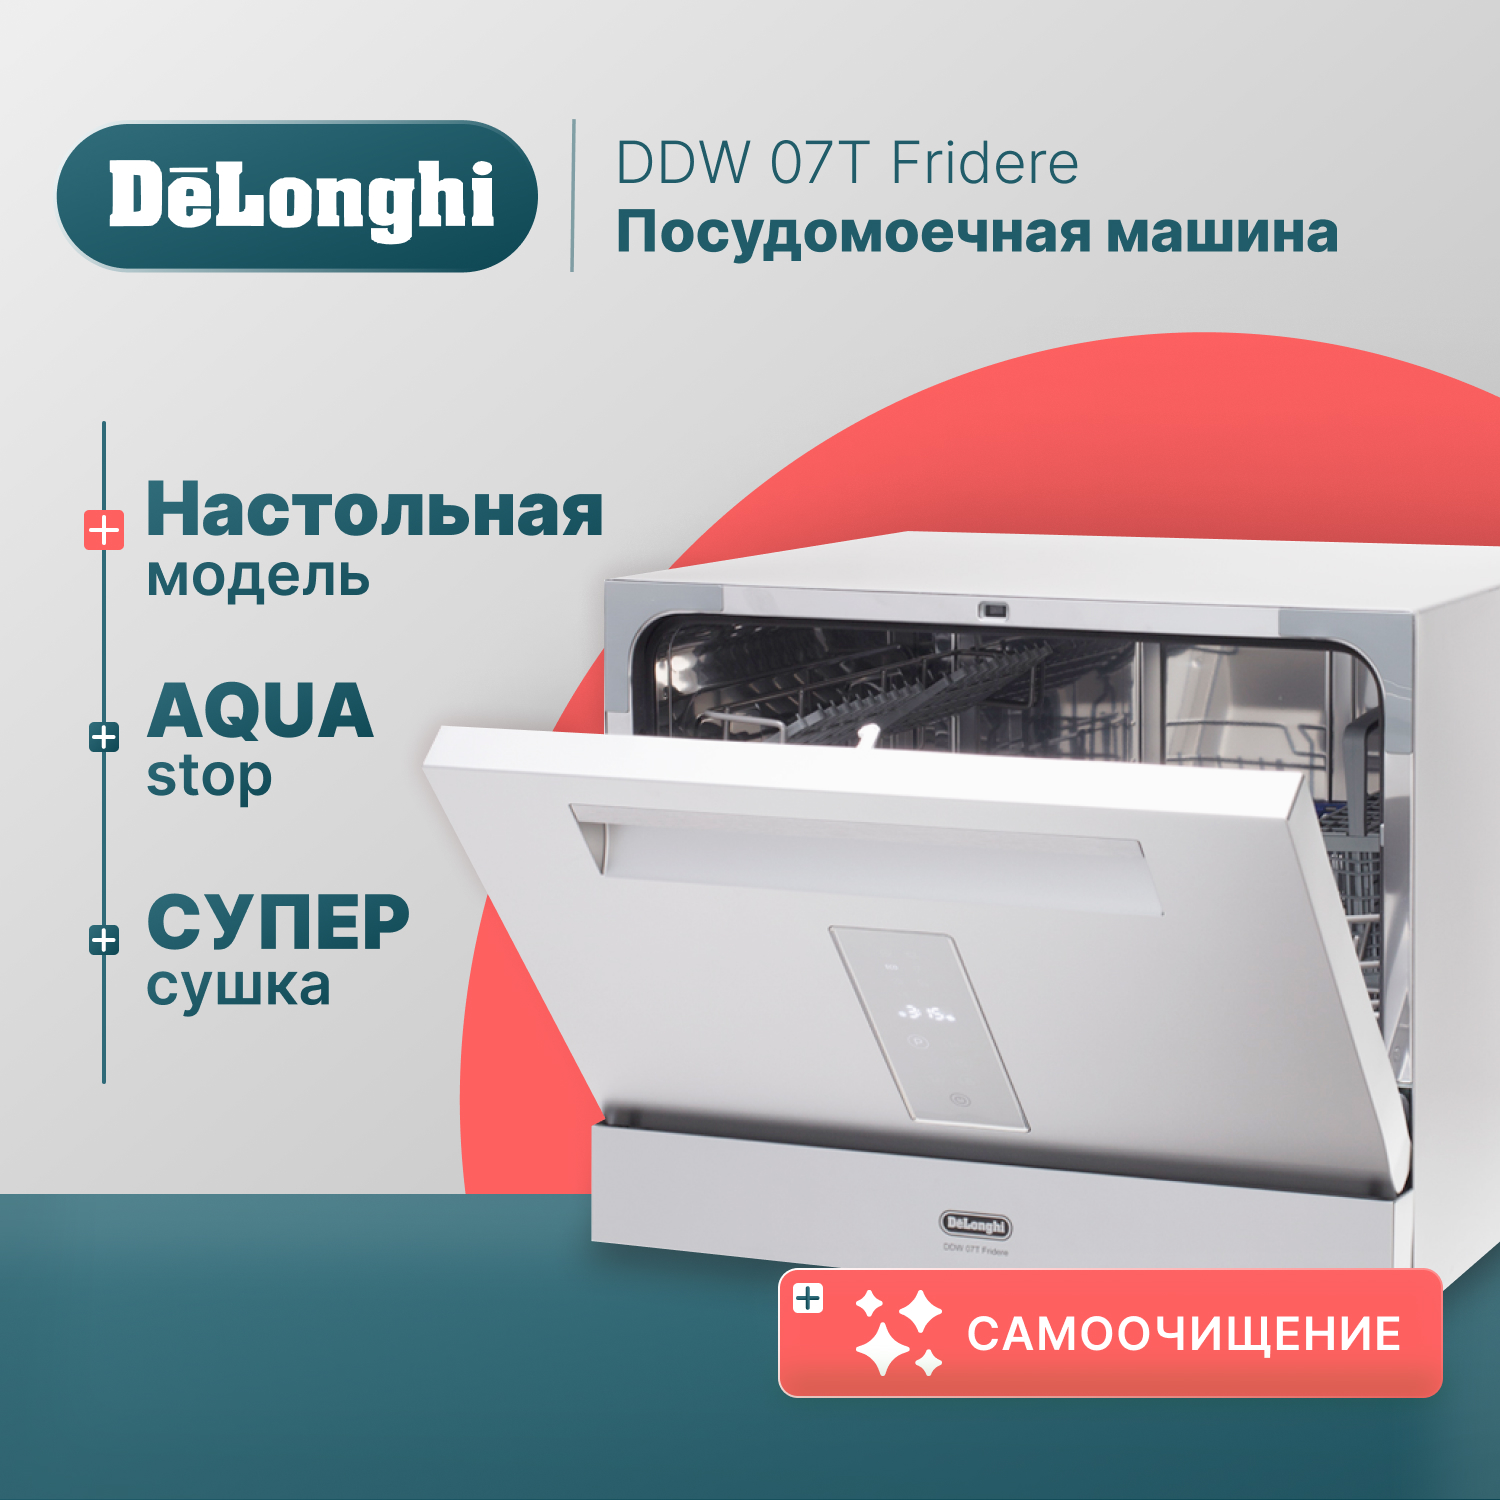 Посудомоечная машина Delonghi DDW07T Fridere серебристый компактная посудомоечная машина de’longhi ddw07t crisolita